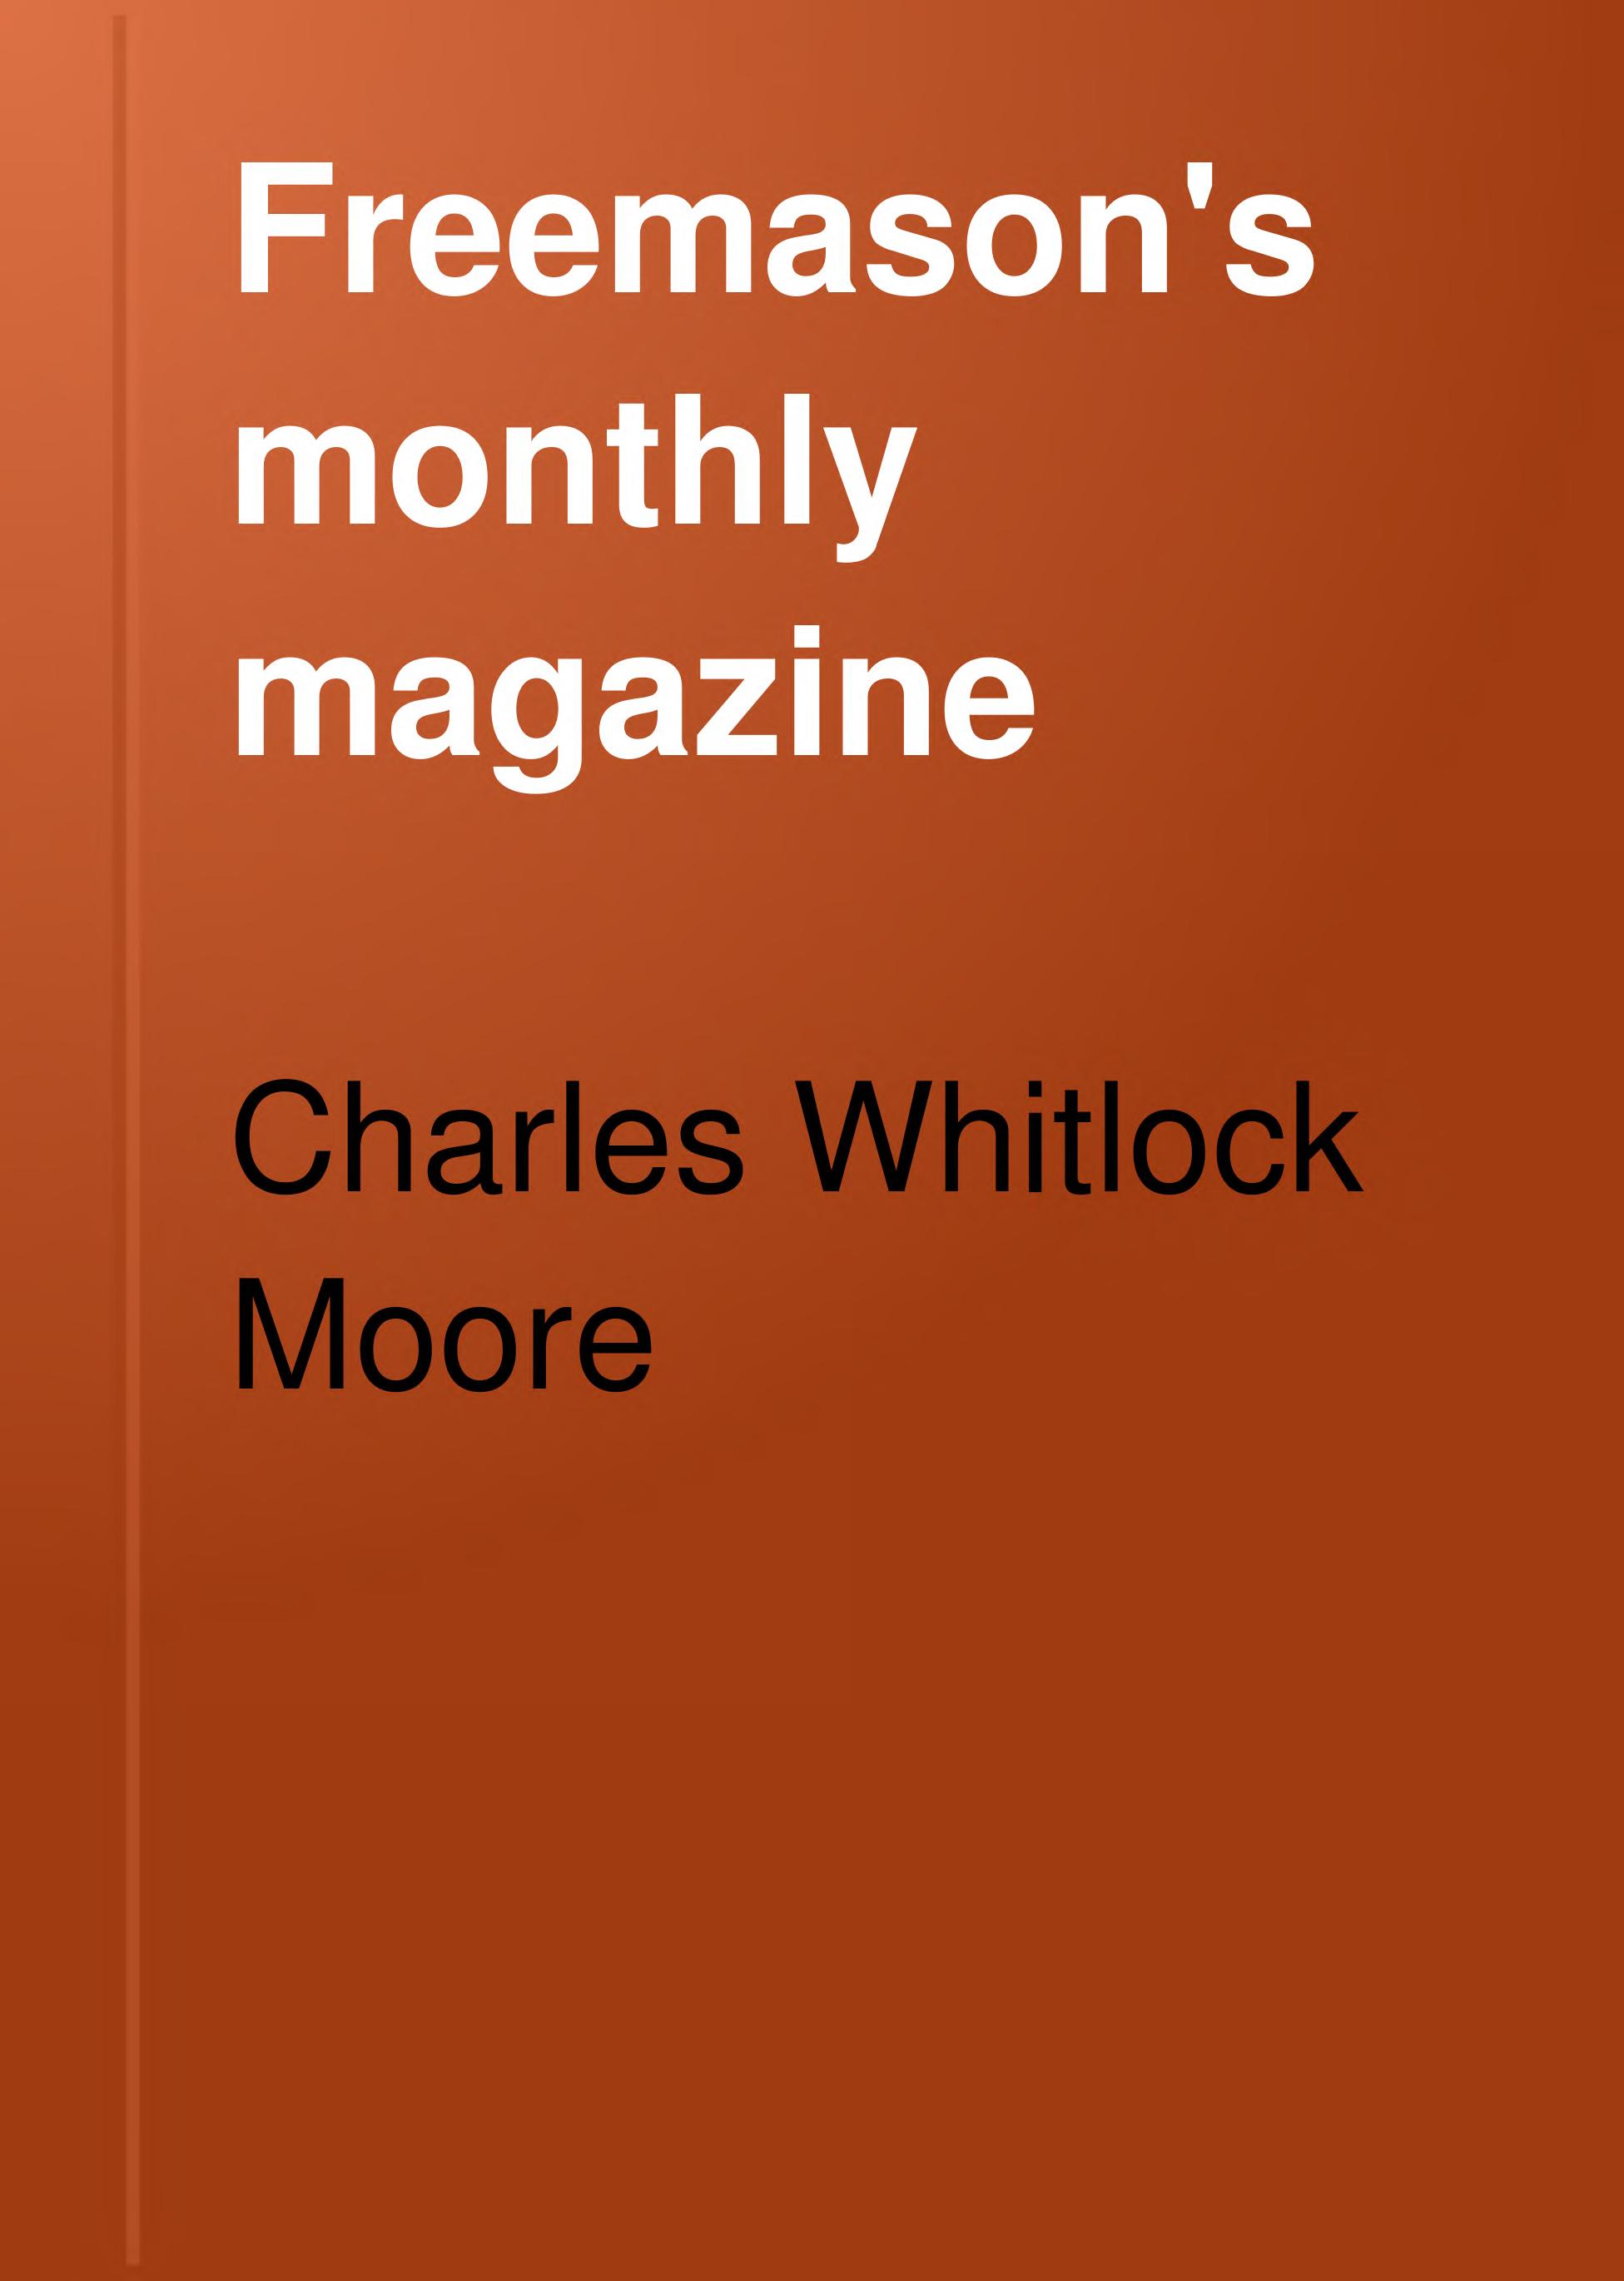 The Freemason's Monthly